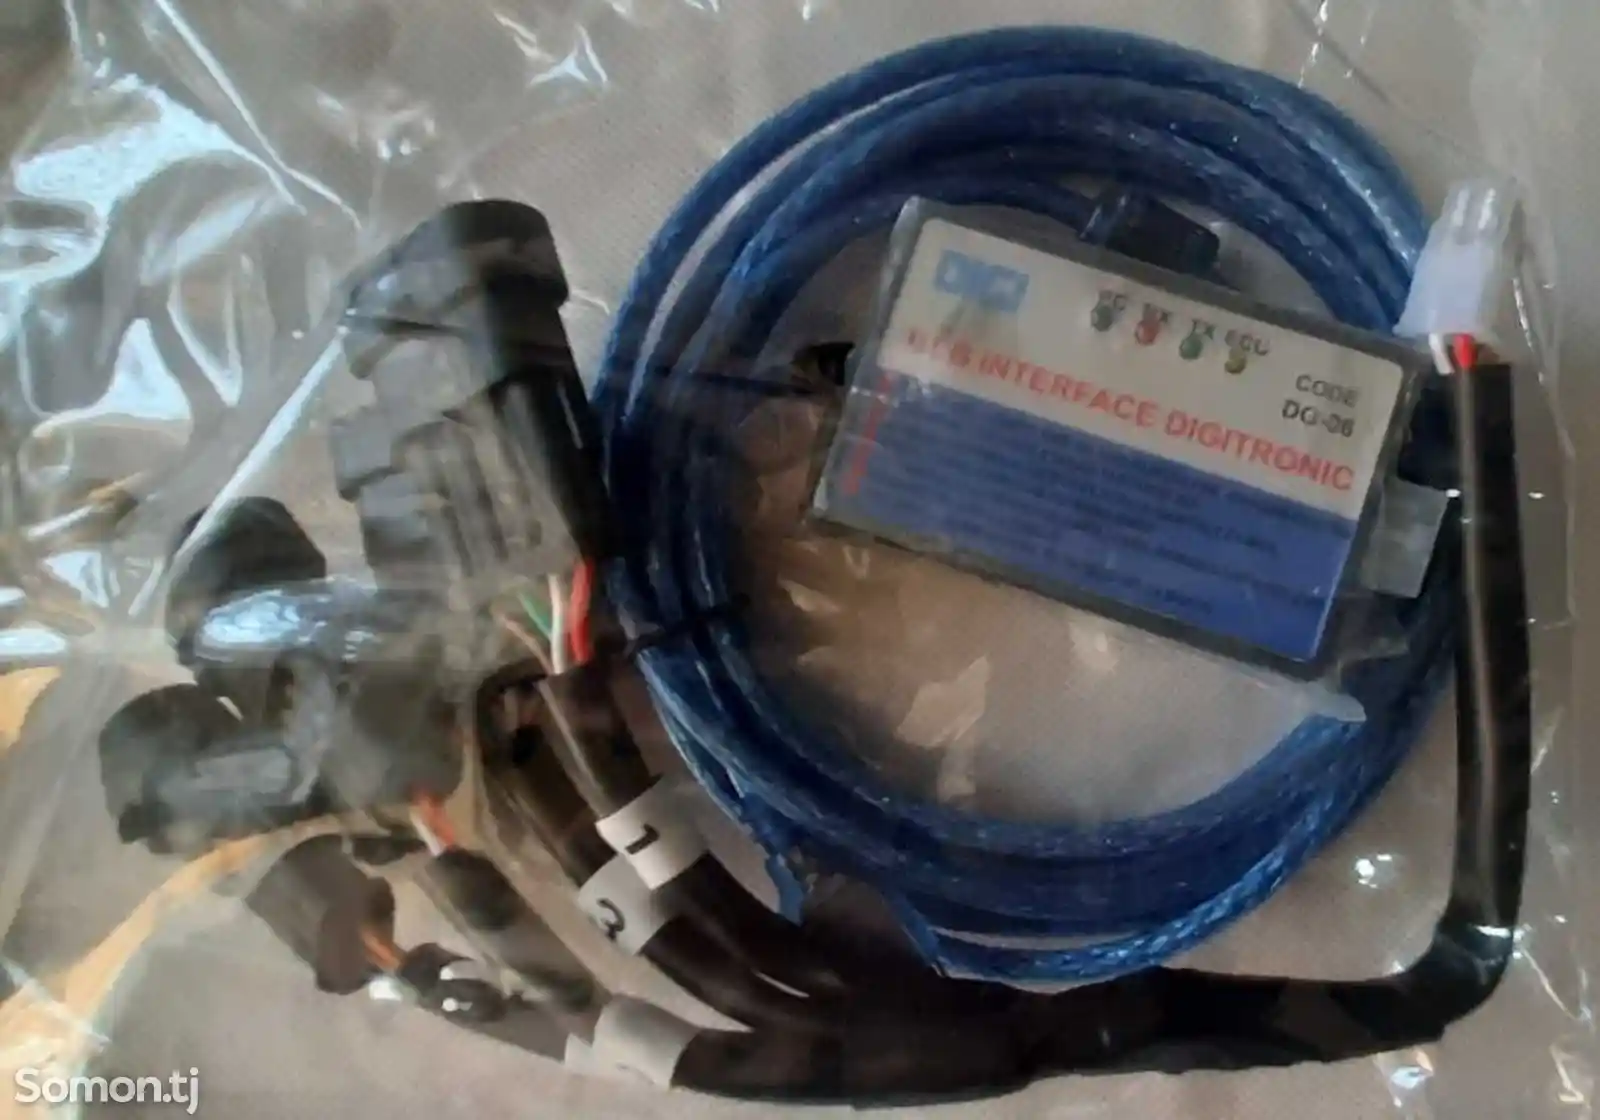 Универсальный кабель Euro-4-1